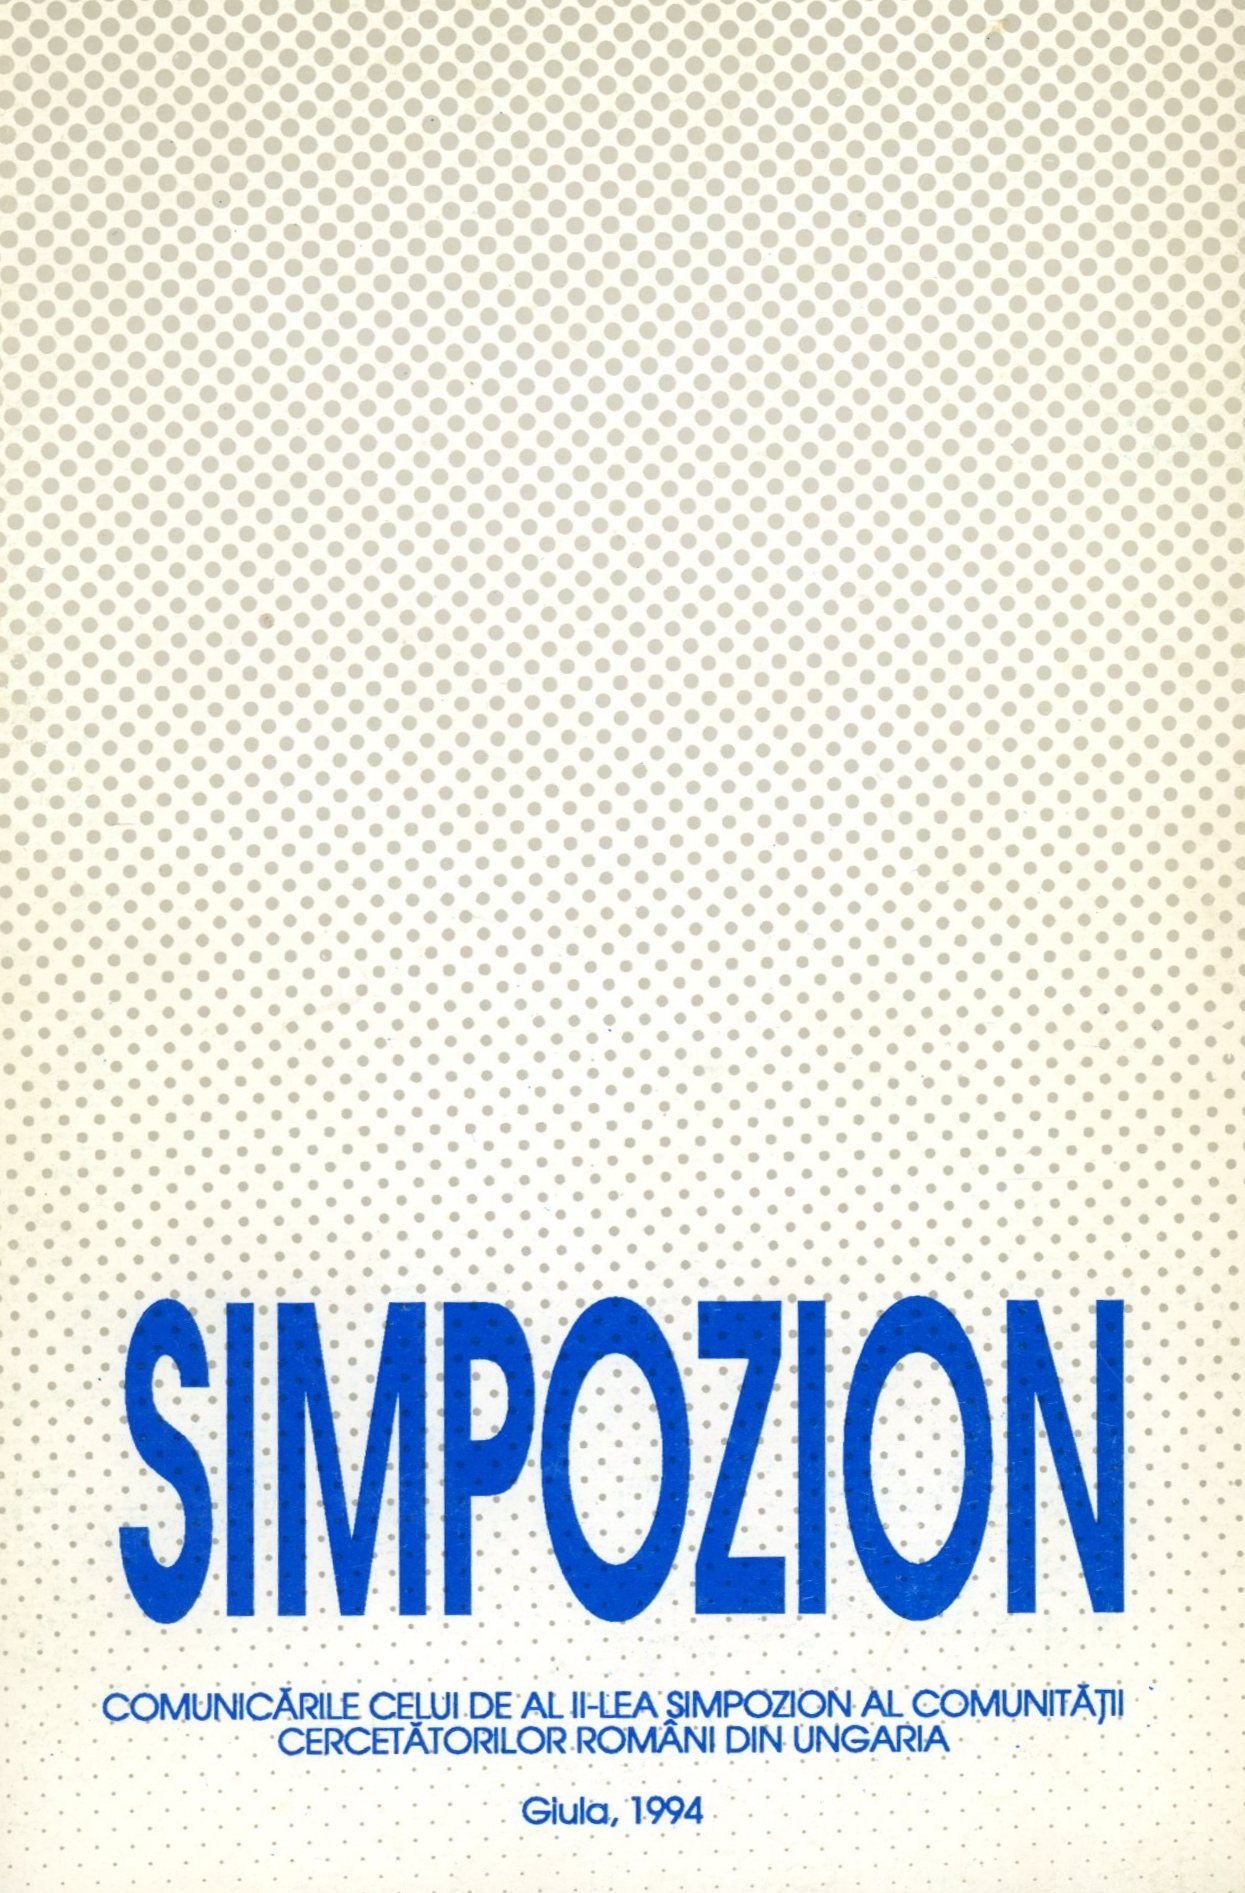 SYMPOZION (Erkel Ferenc Múzeum és Könyvtár, Gyula CC BY-NC-SA)